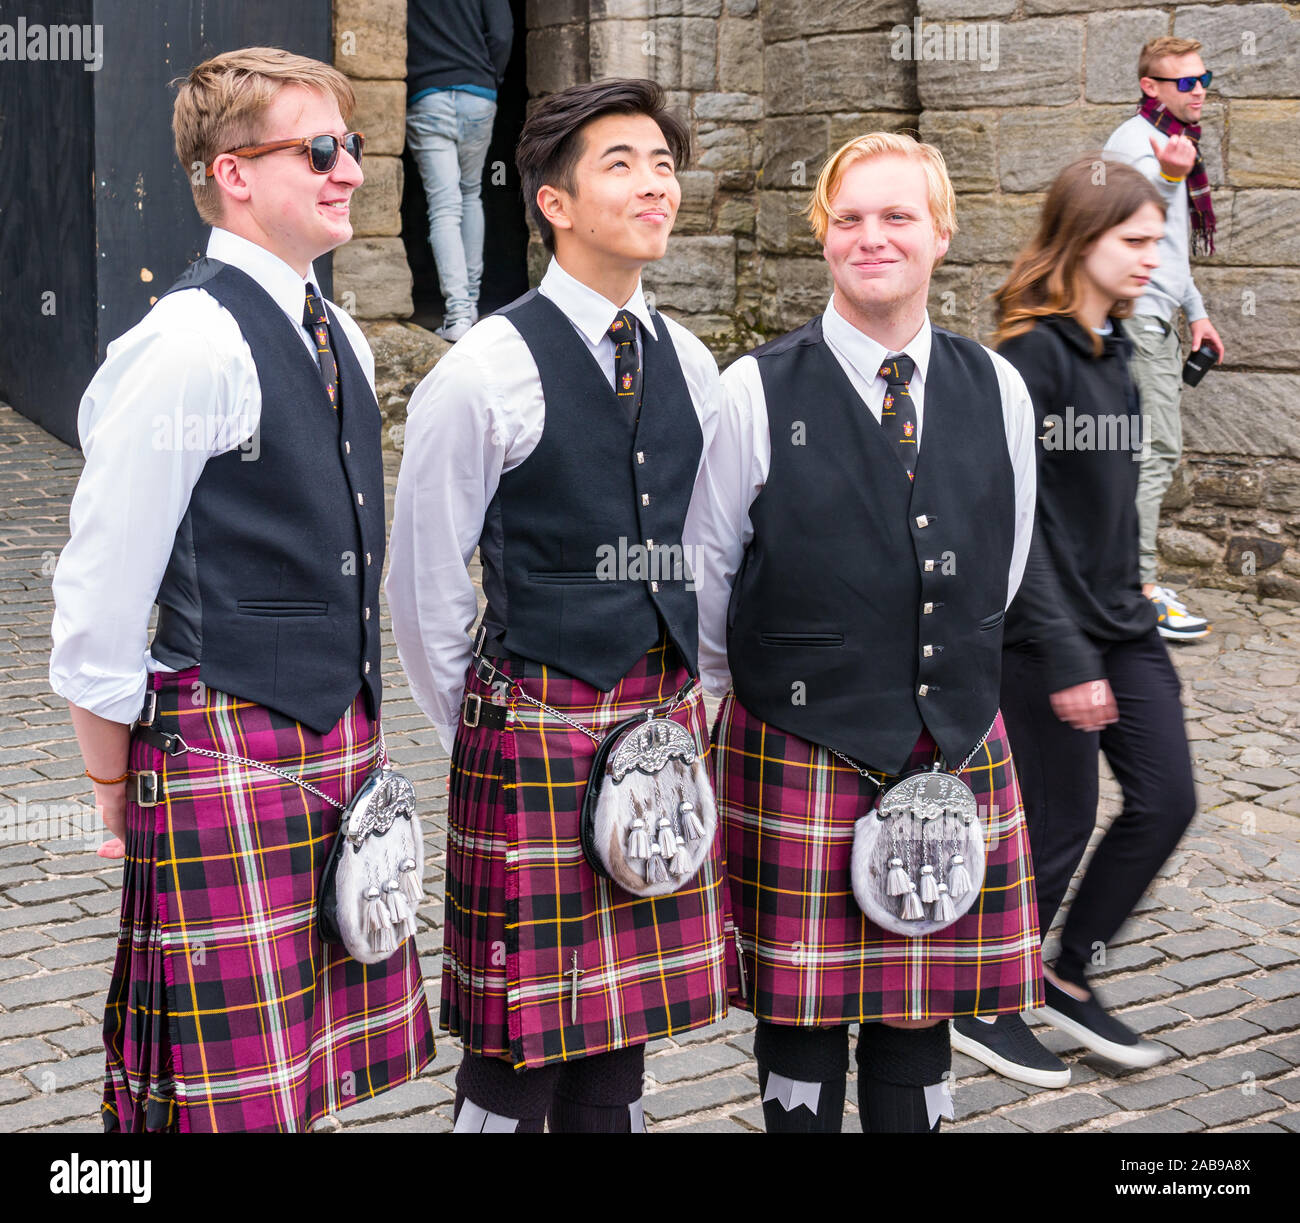 Jugendliche oder junge Männer oder Jugendliche tragen passende Kilts, Eingangstor des Stirling Castle, Schottland, Großbritannien Stockfoto